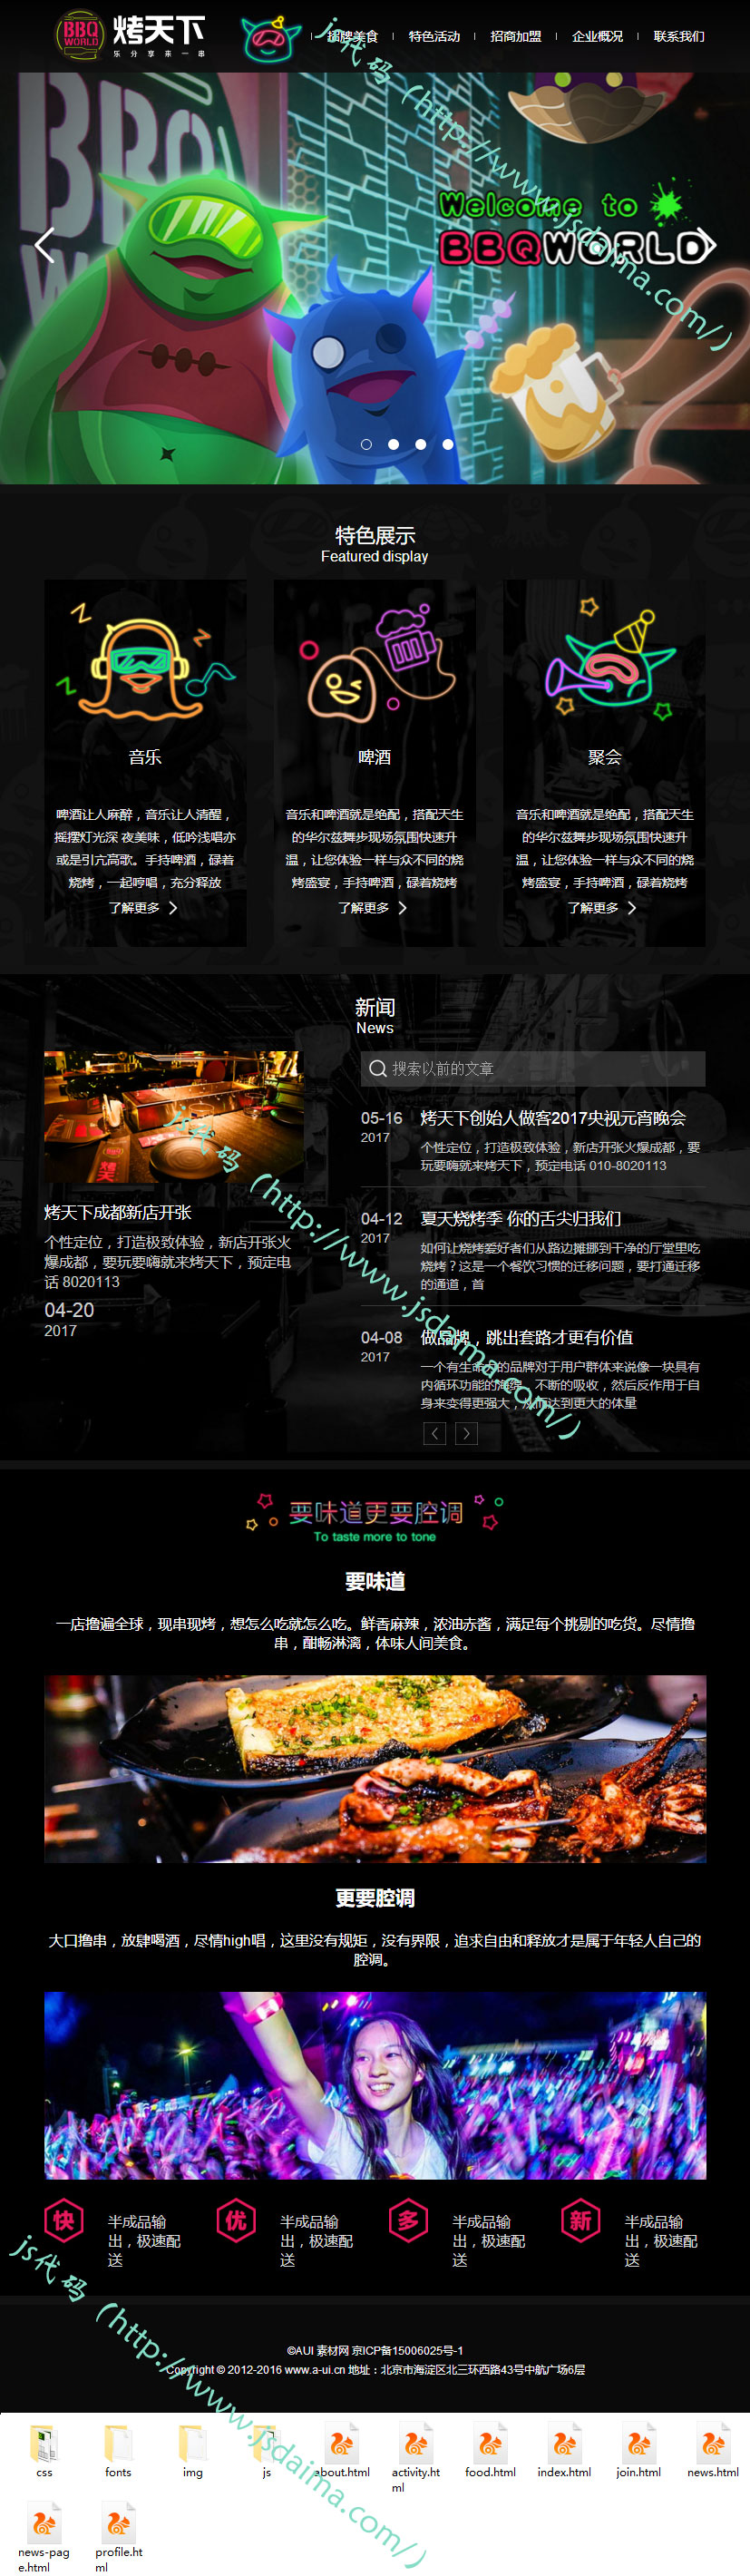 大气炫酷响应式美食餐饮加盟网站模板全套下载